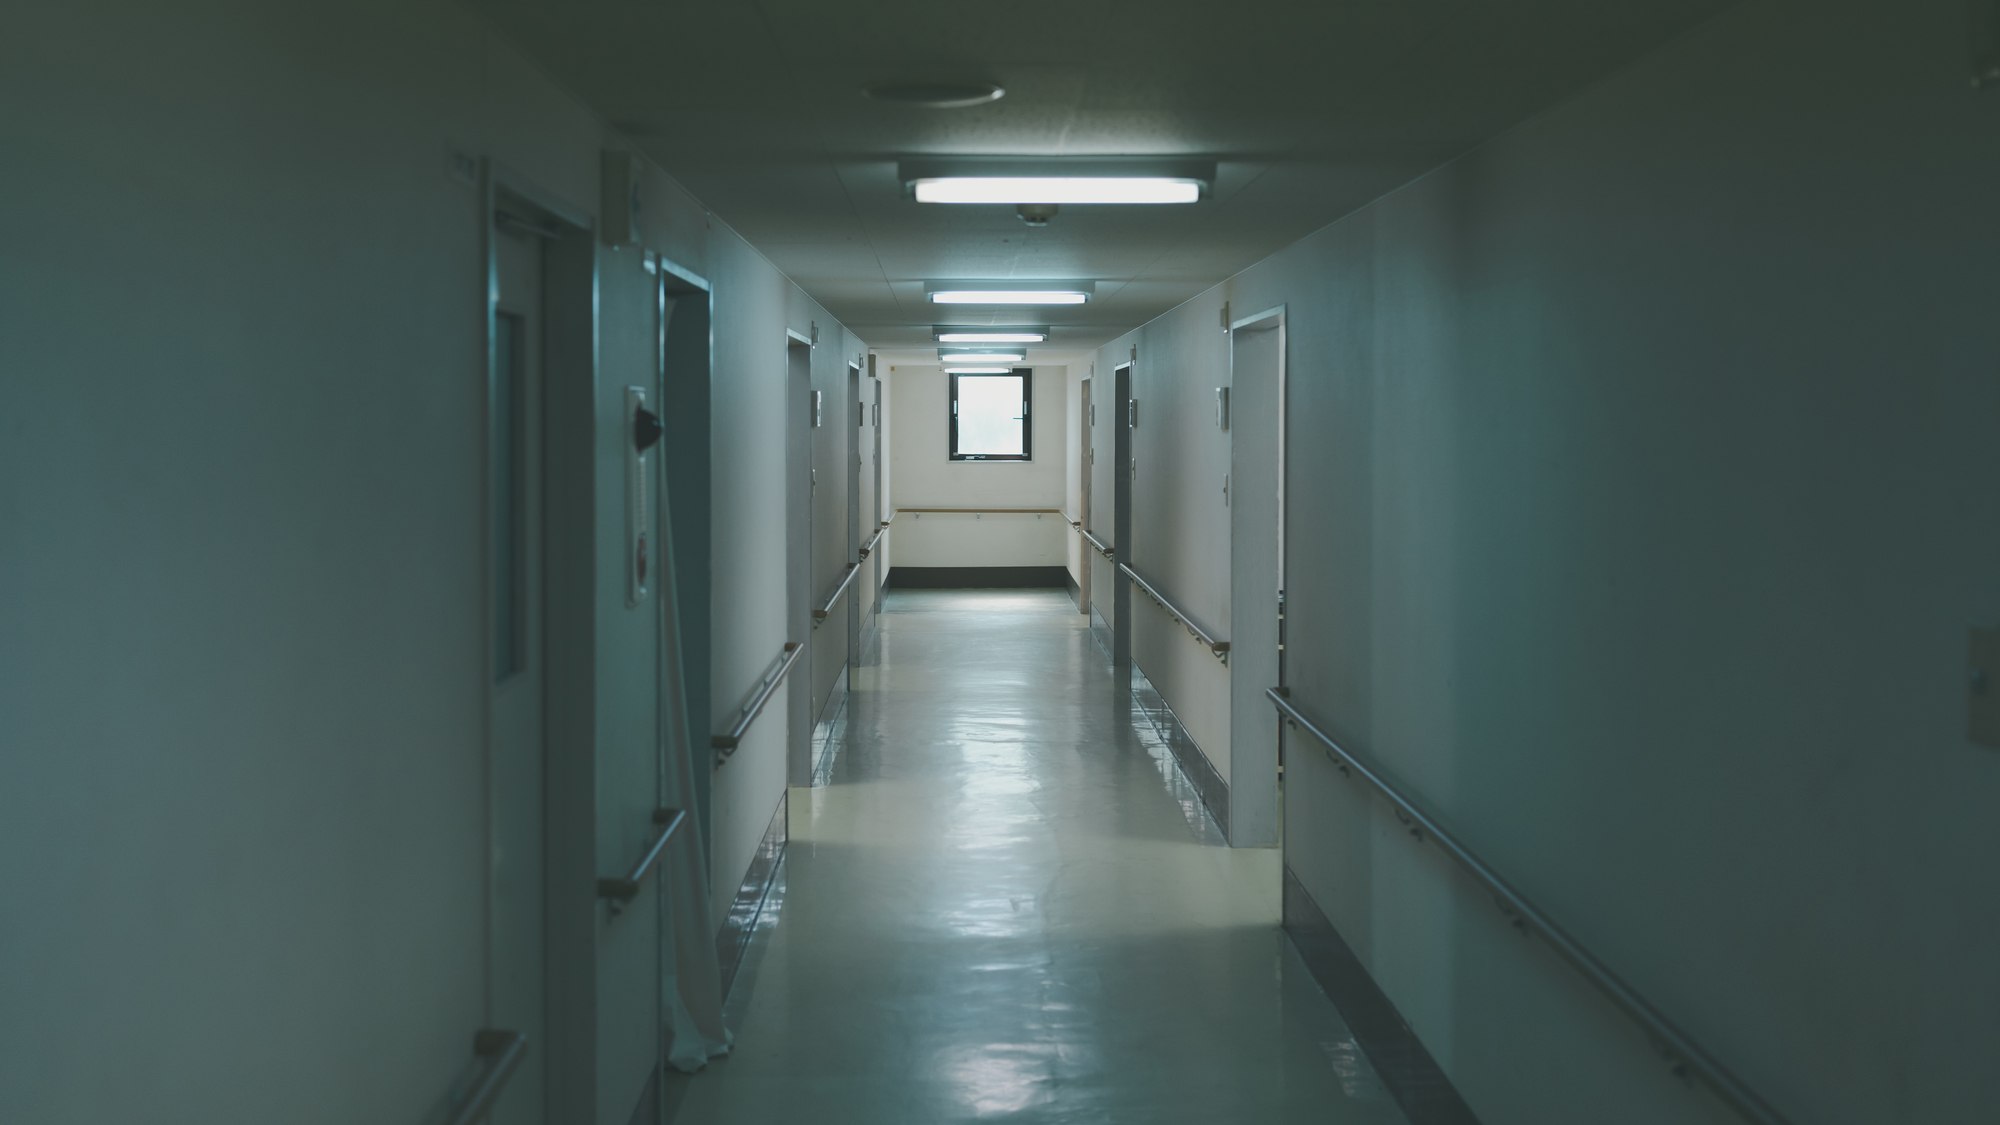 「患者数を確保してください」病院の公共性と差別化のジレンマ